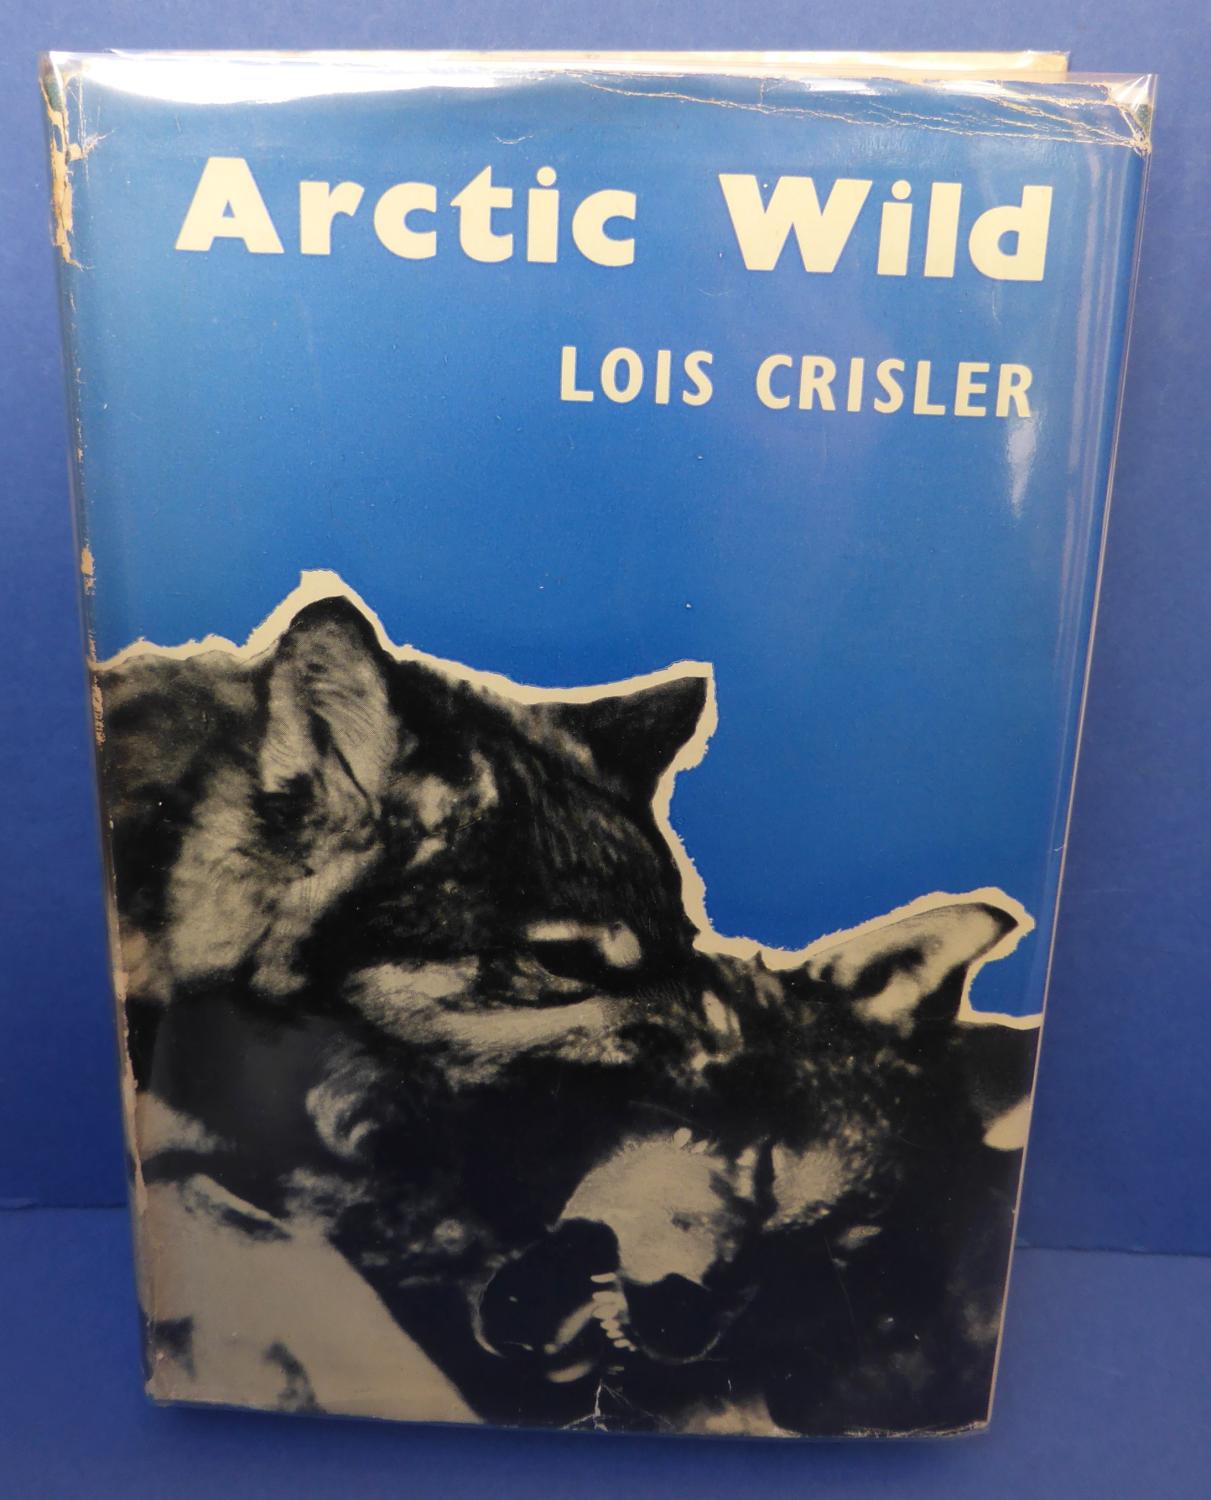 Arctic Wild - Crisler, Lois